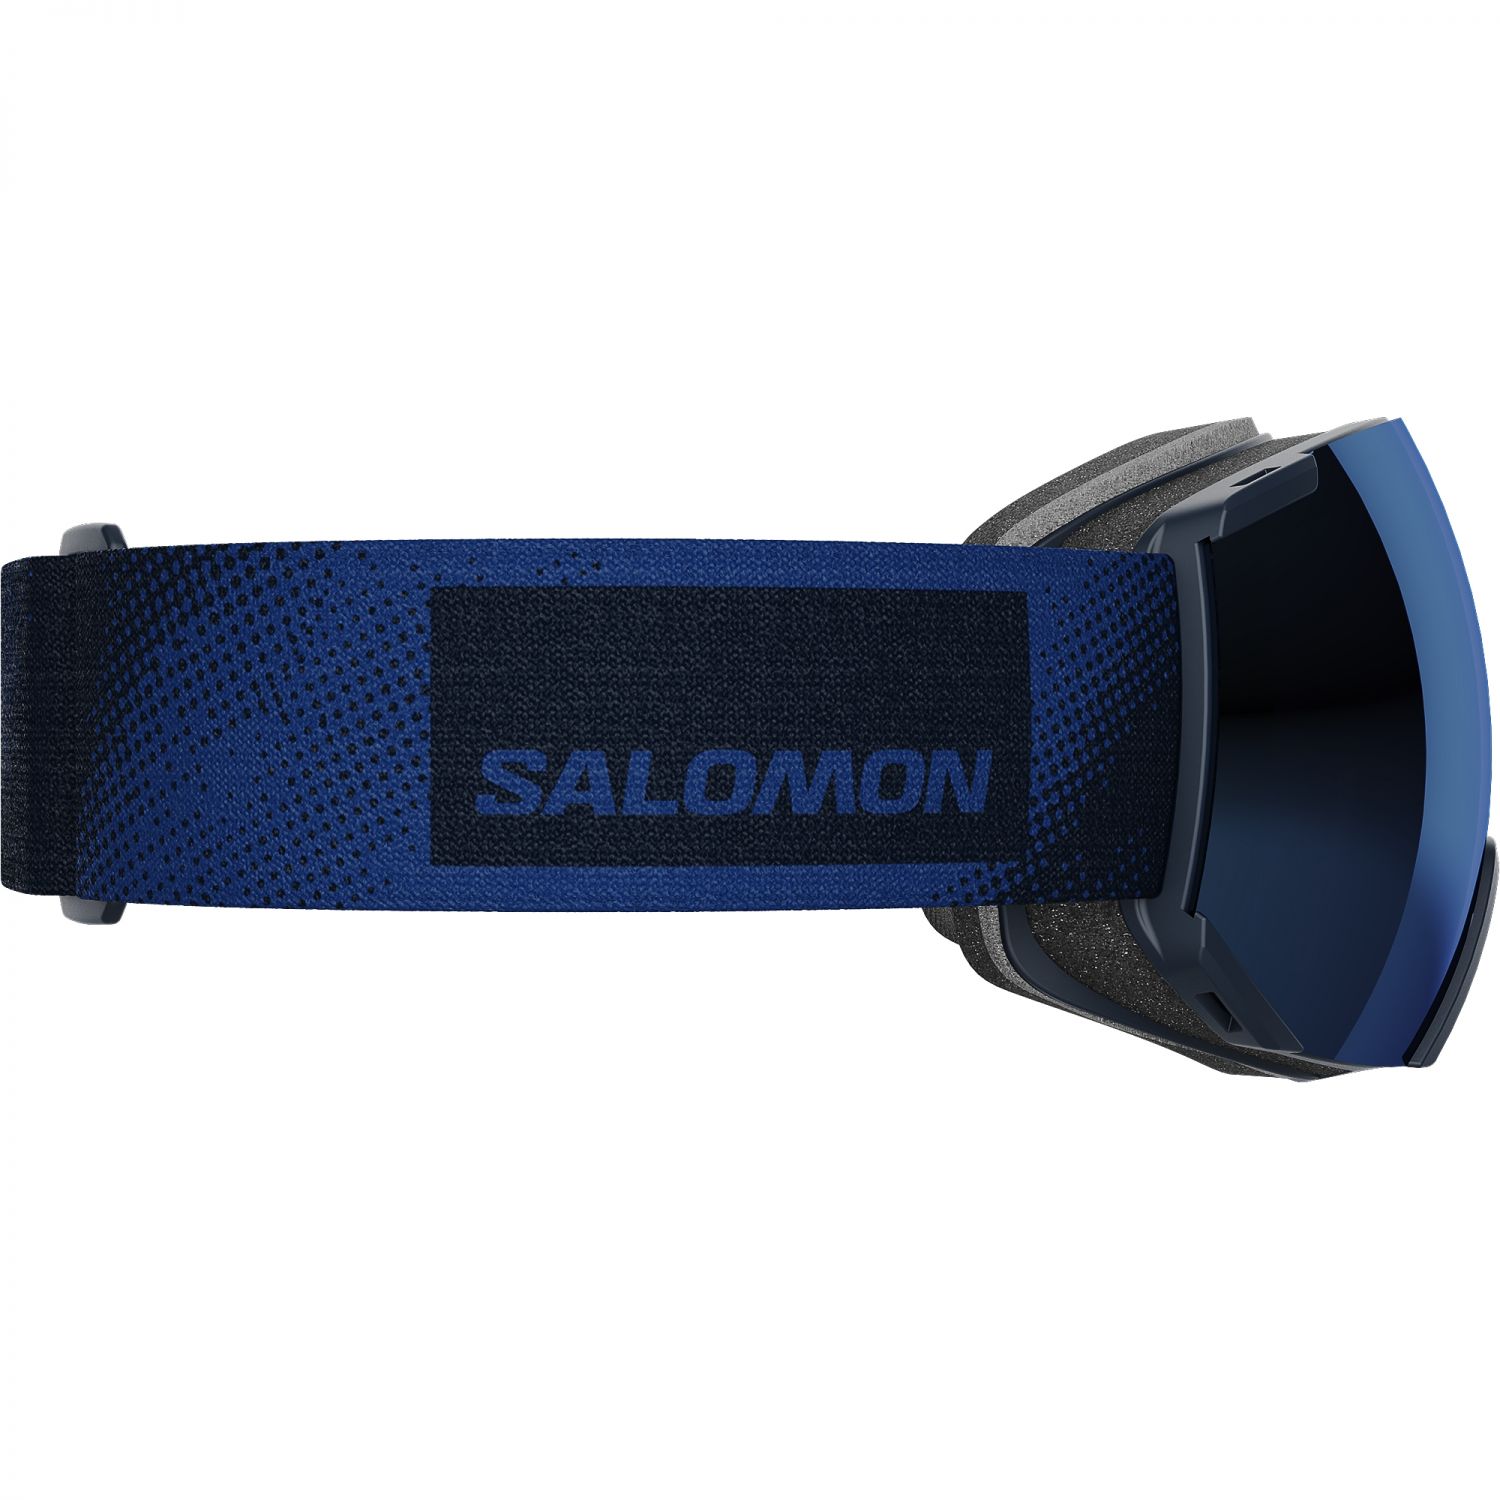 Salomon Radium Sigma, skibriller, blauw